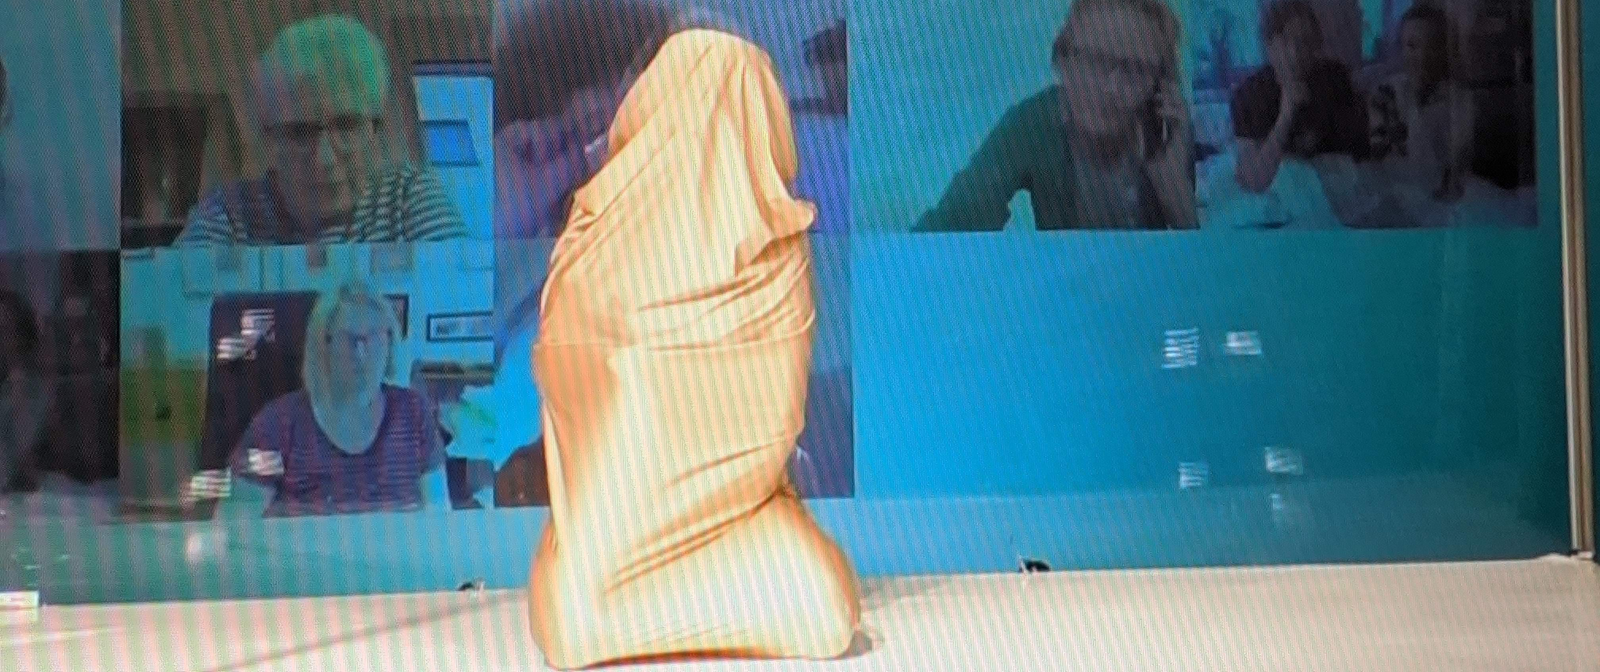 Eine Person ist komplett in ein goldenes Tuch verhüllt und kniet auf der Bühne. Im Hintergrund sind die Kacheln einer Videokonferenz auf einem Bildschirm zu sehen.